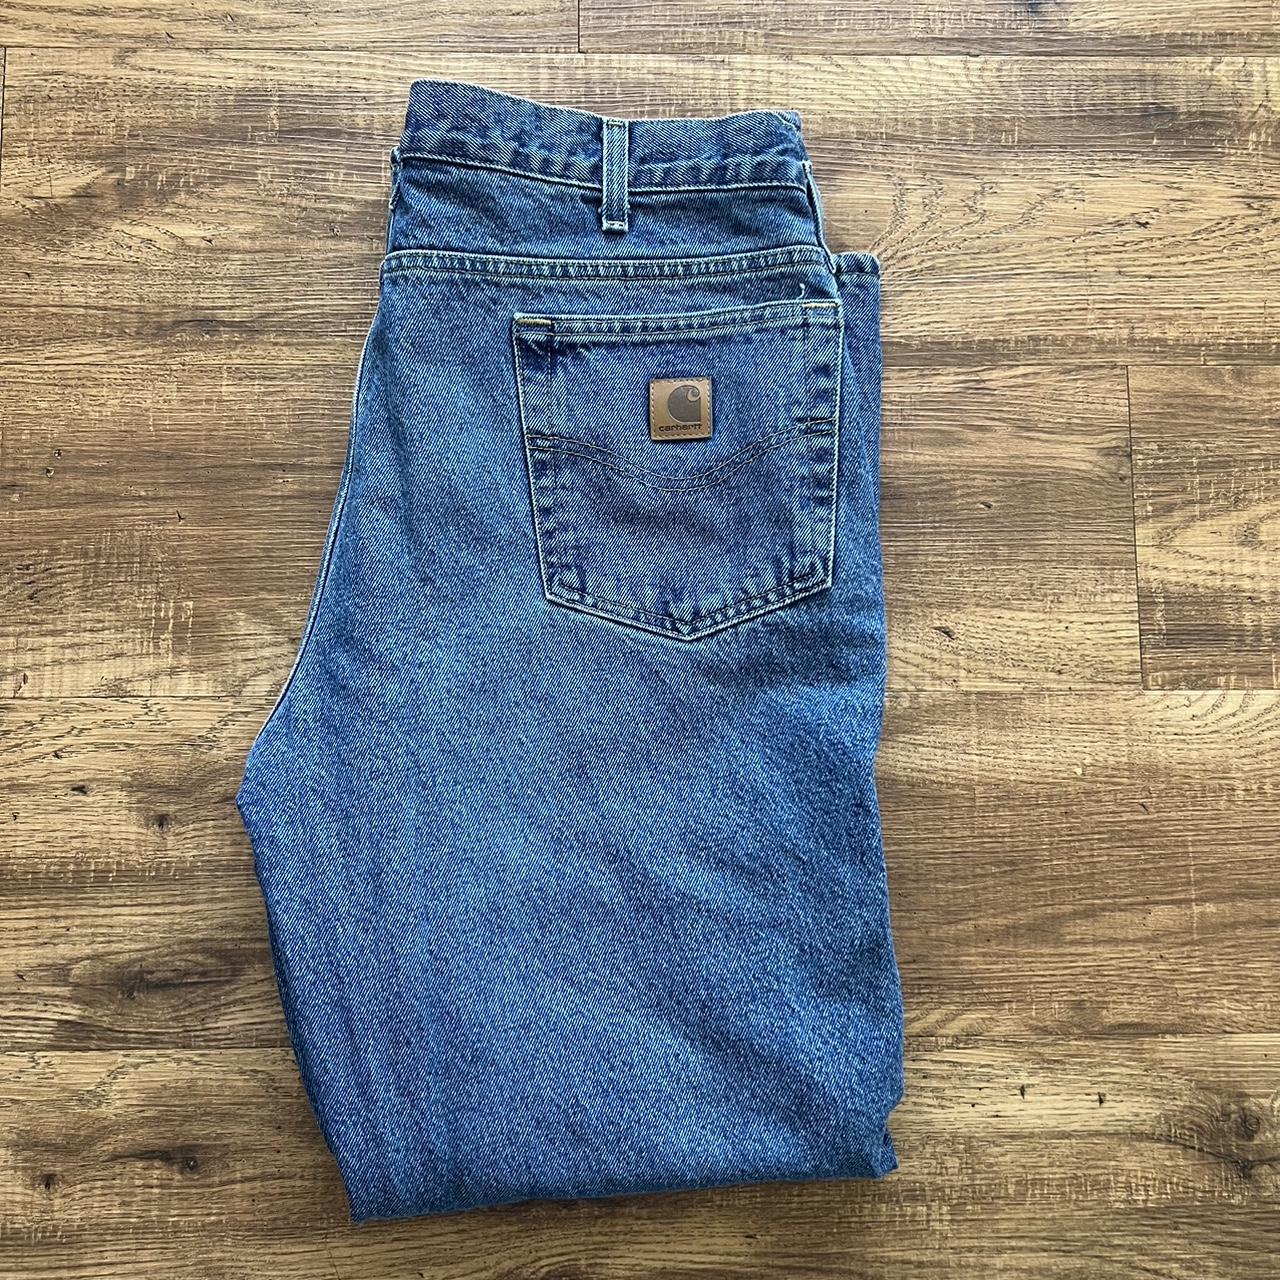 Vintage Carhartt Fleece Lined Jeans Size 36x30... - Depop